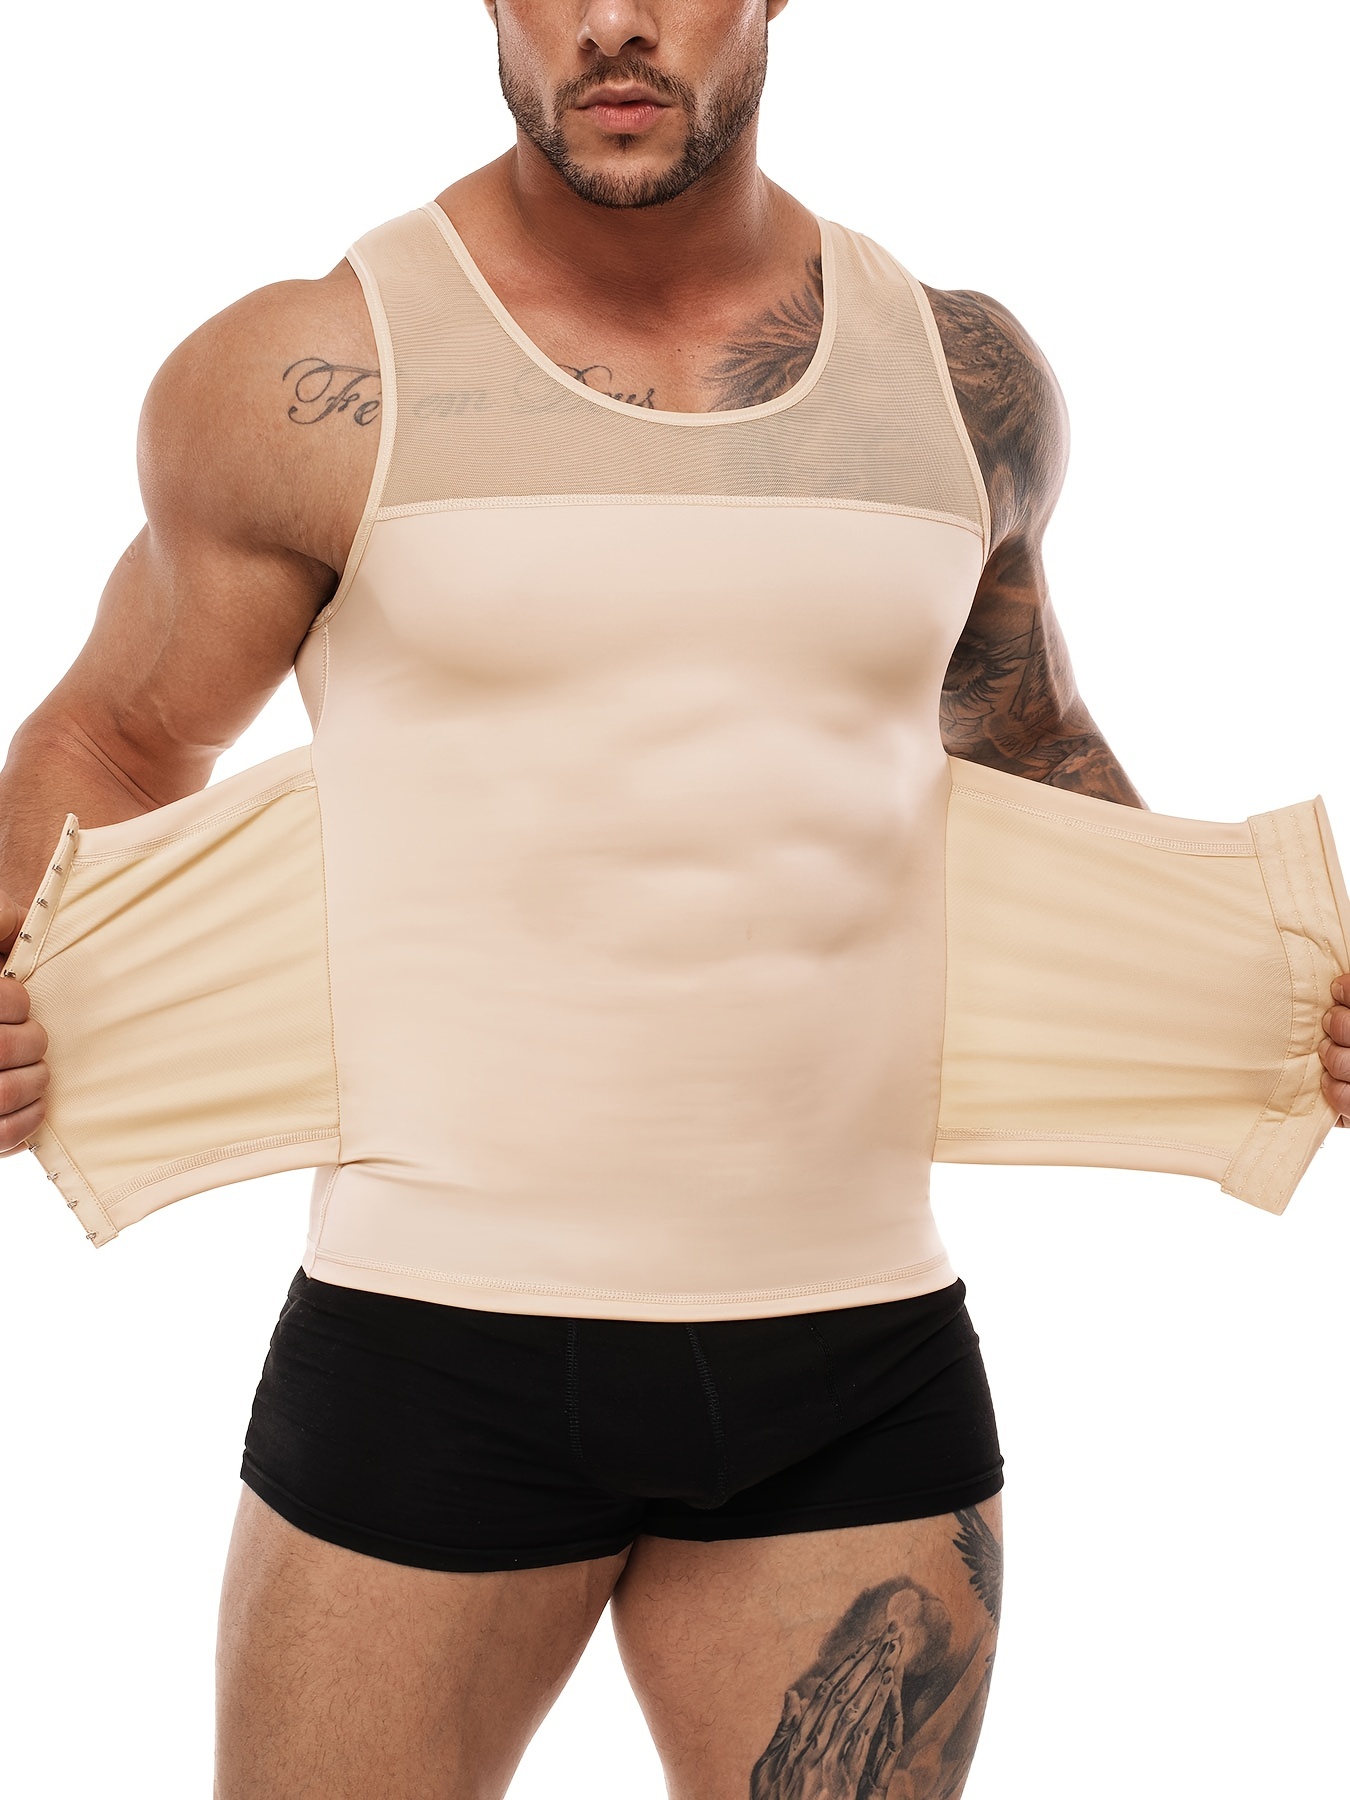 Camisetas sin Mangas Moldeadoras Transpirables para Hombres